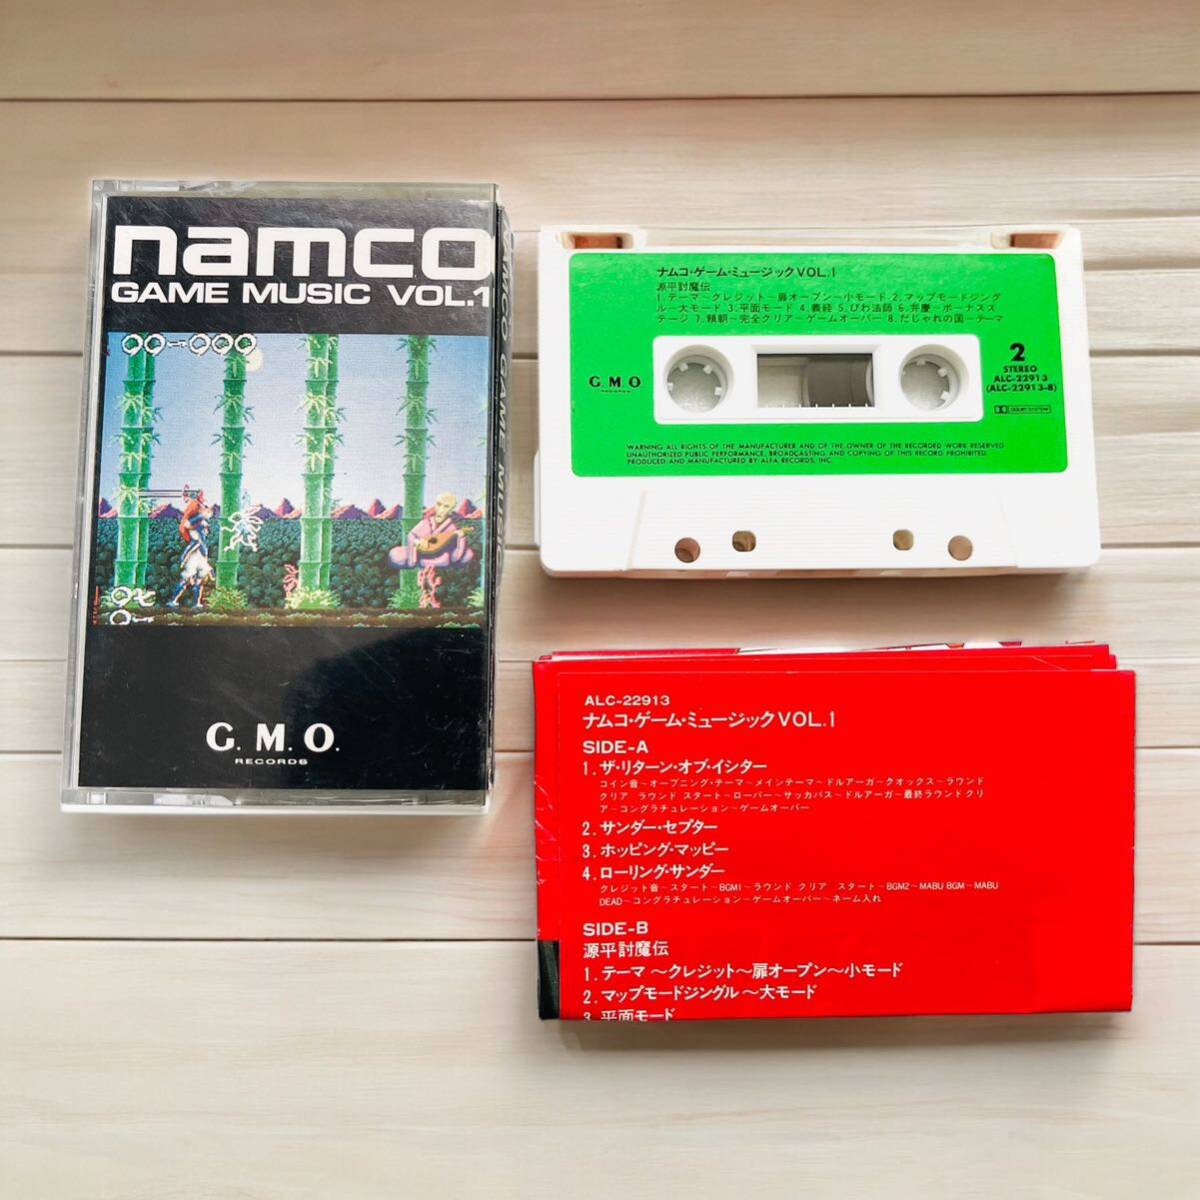 【ゲーム音楽/コレクター用】namco game music vol.1 ナムコゲームミュージック 1巻 カセットテープ アルファレコード 説明書付き _画像4